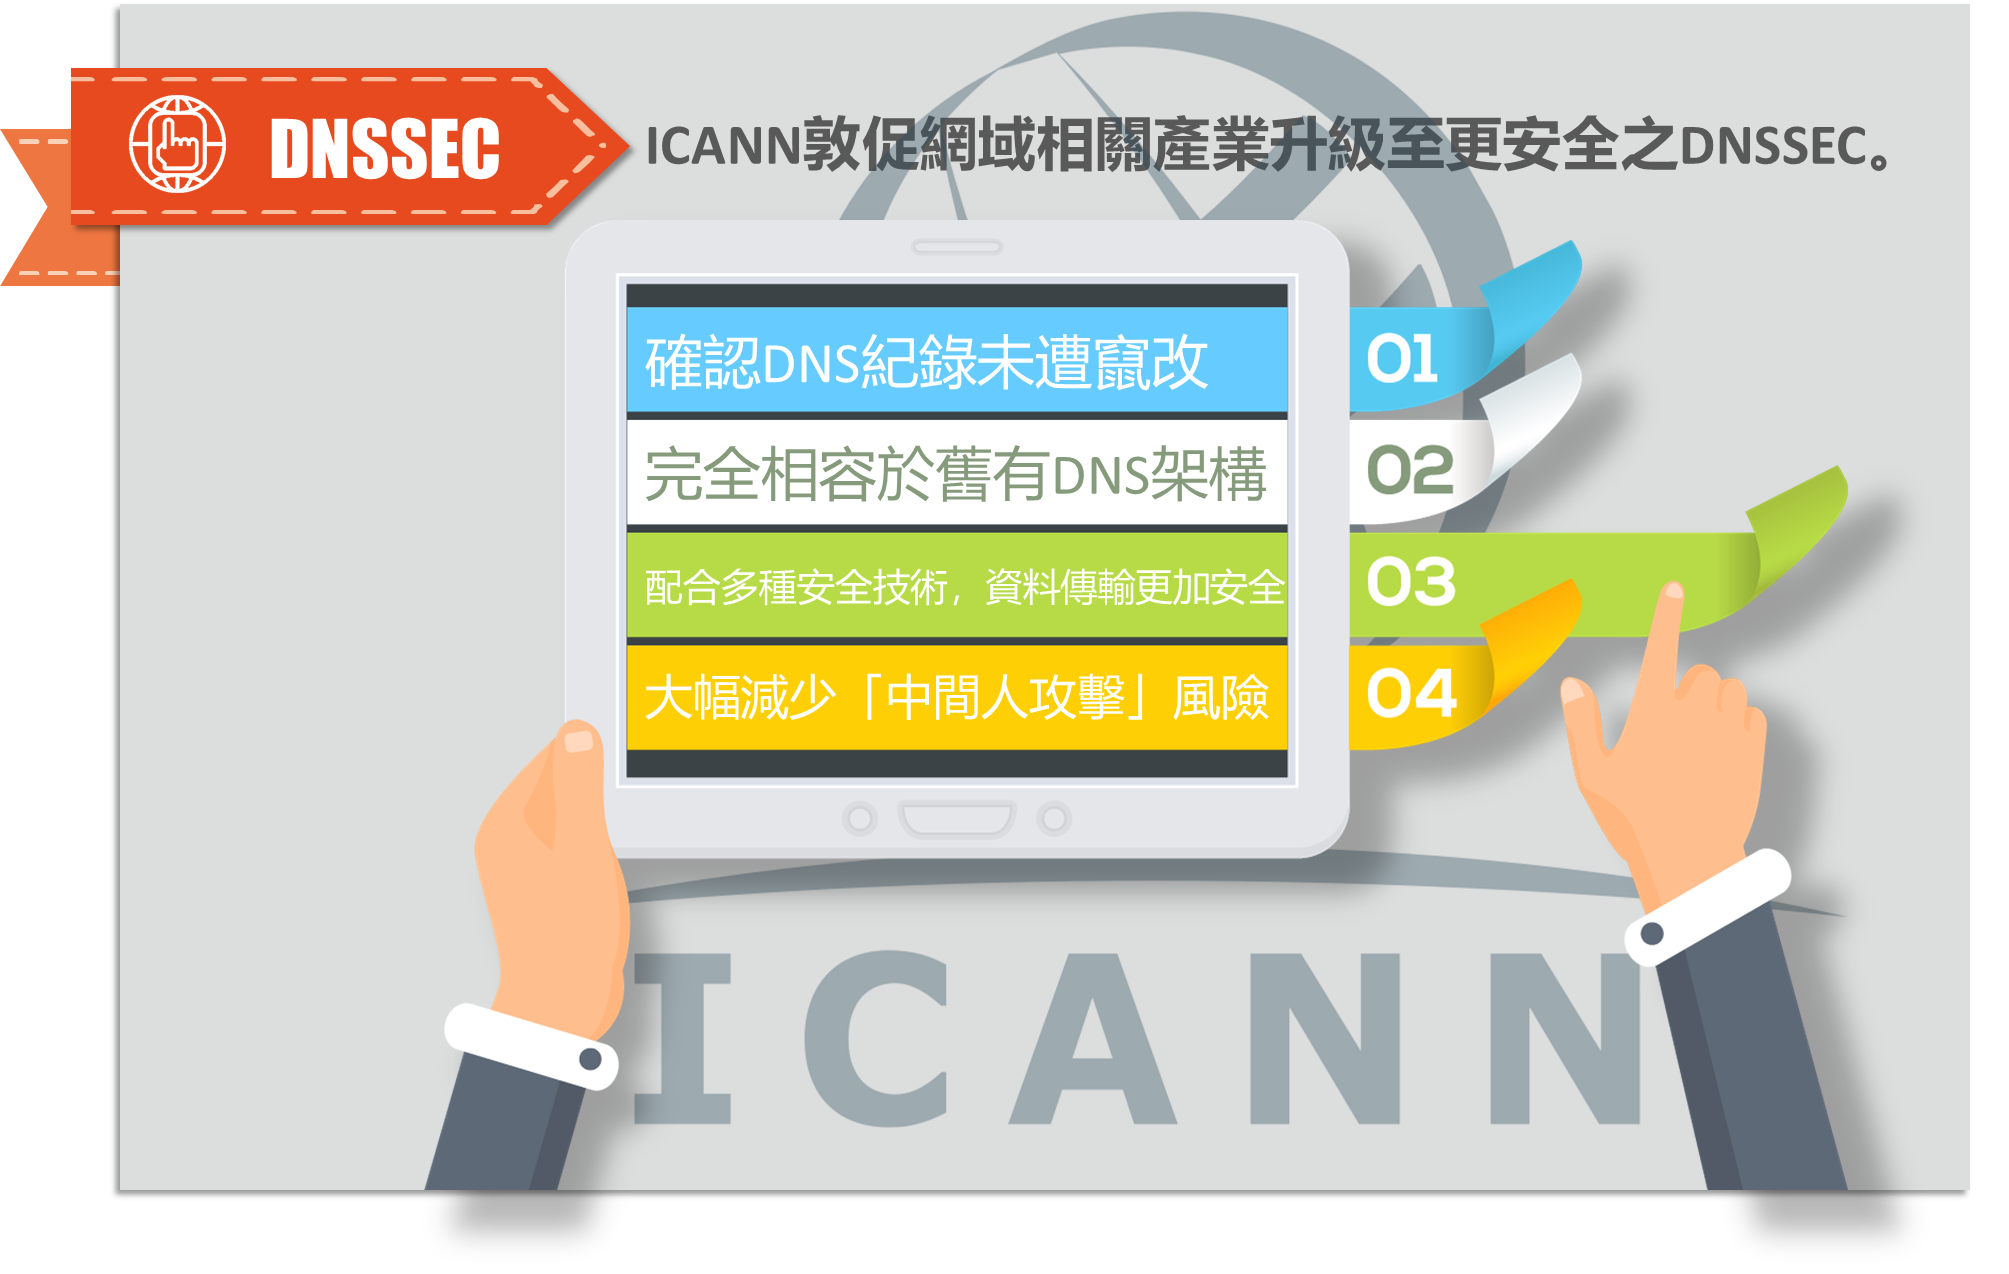 防杜 DNS 攔截攻擊事件，ICANN 發文敦促技術升級